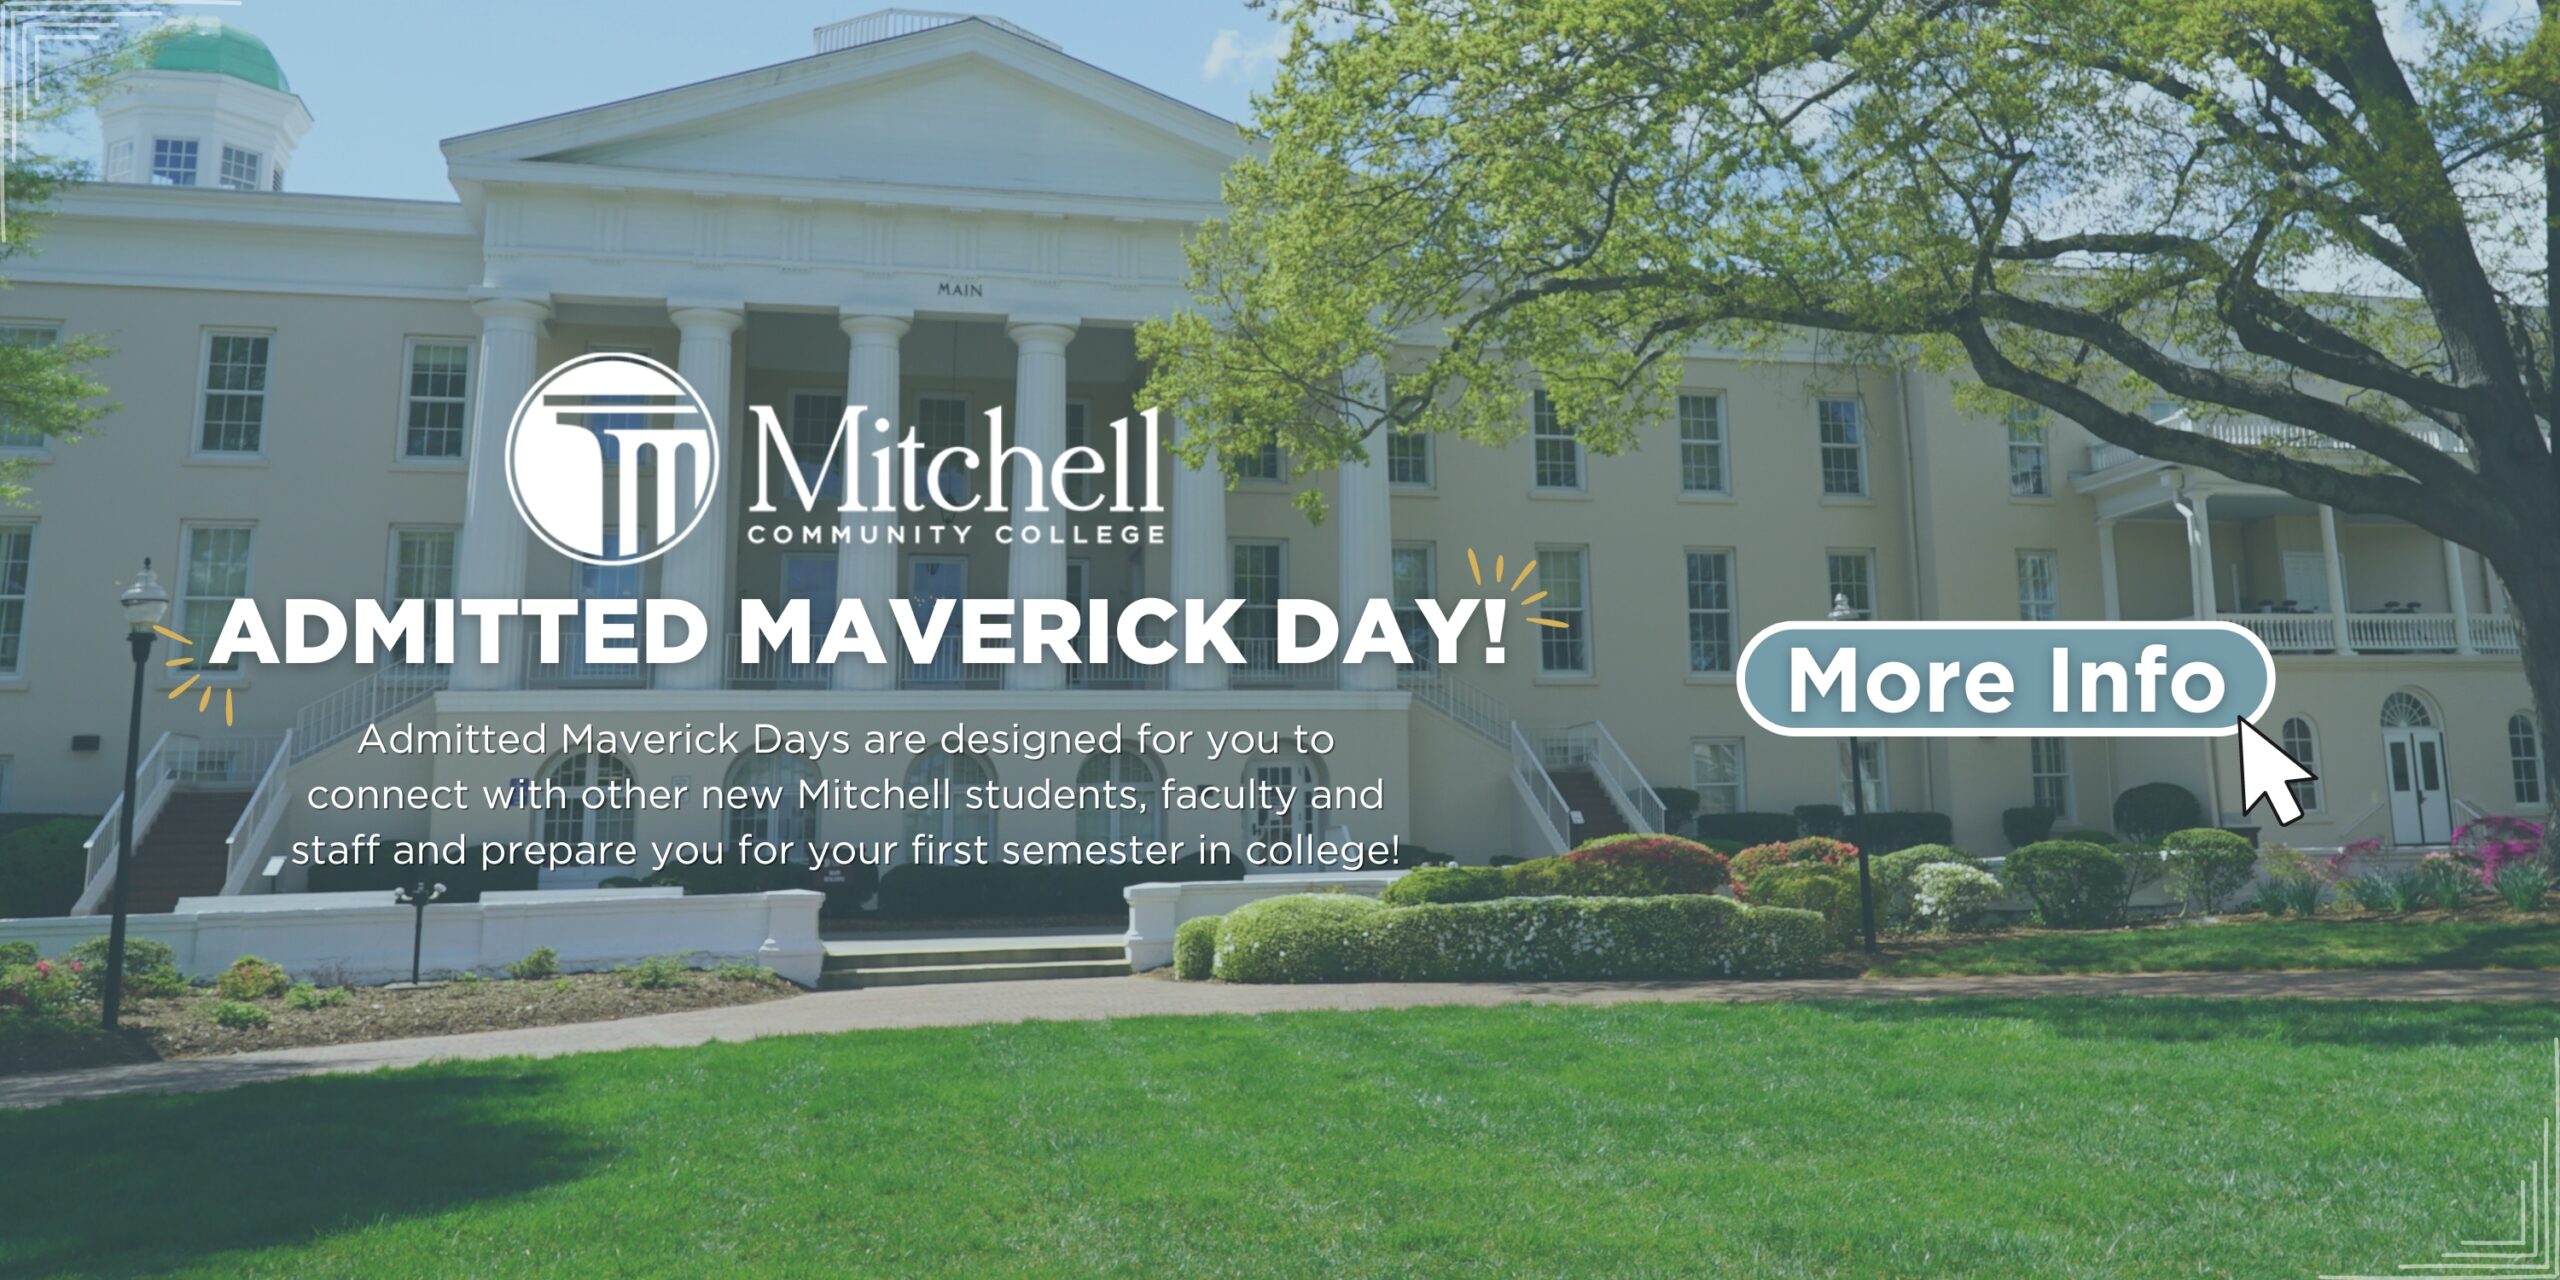 Клацніть цей банер, щоб дізнатися більше про Admitted Maverick Day!